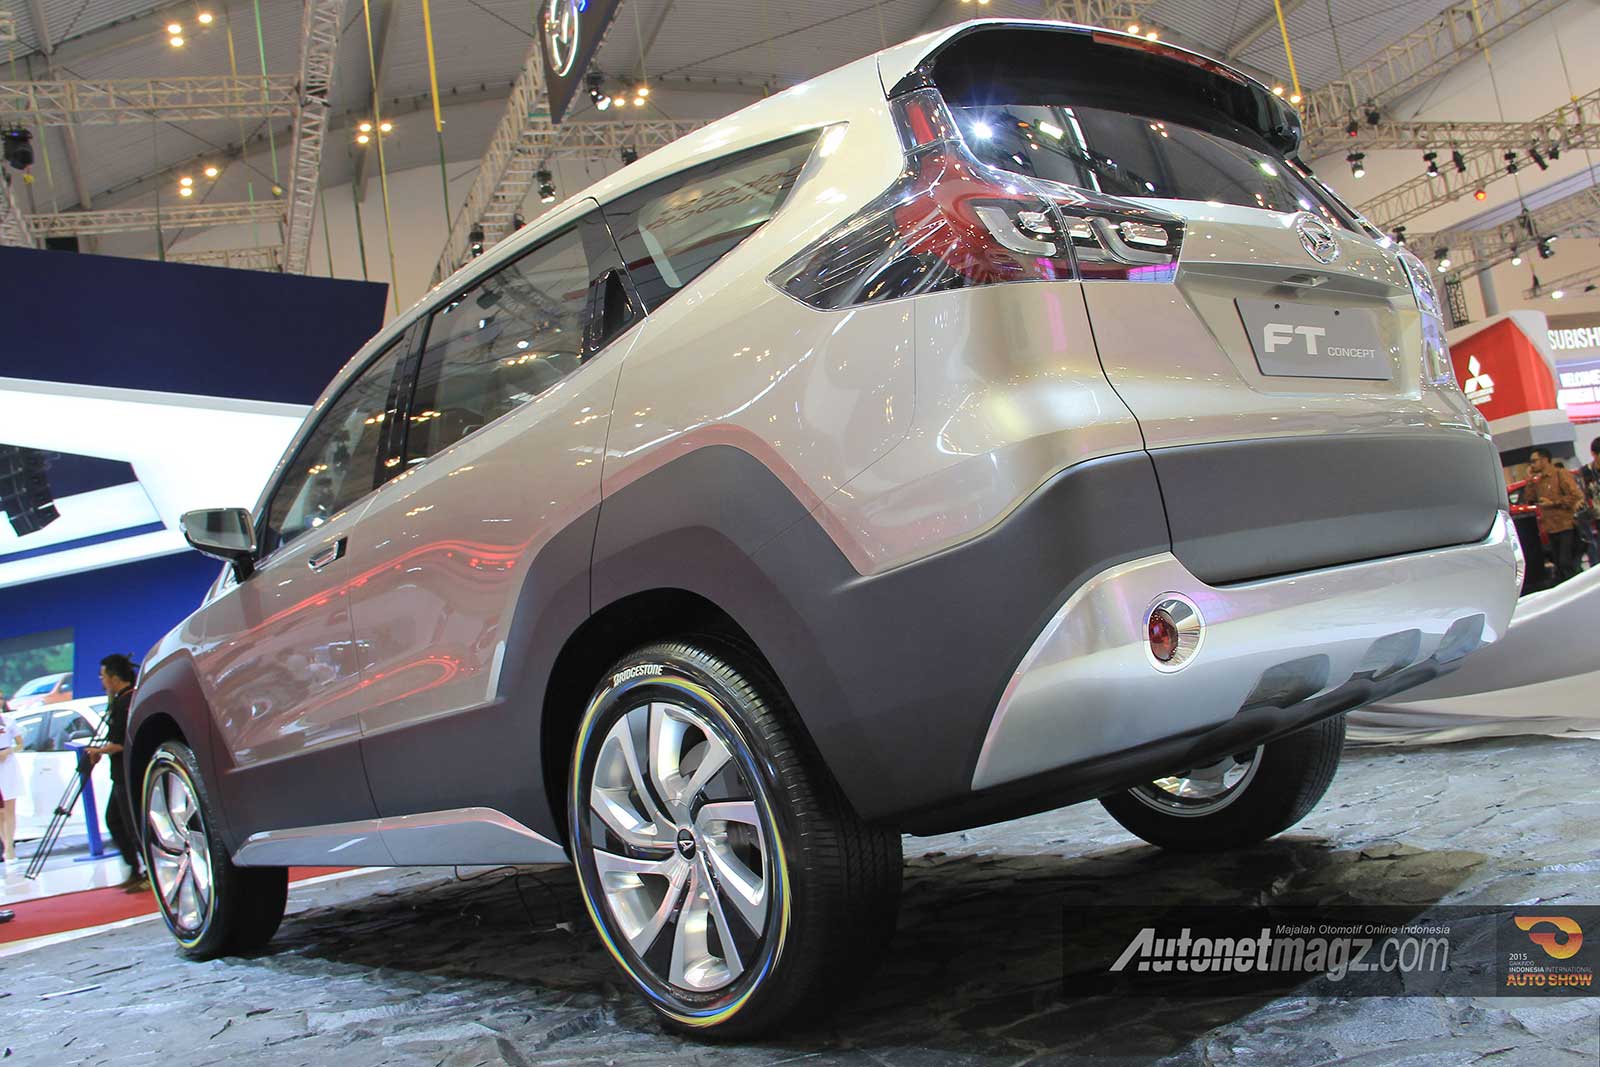 Daihatsu, SUV 7 penumpang 3 baris jok Daihatsu FT Concept di GIIAS 2015: SUV 7 Seaters Daihatsu FT Concept Hadir di GIIAS 2015